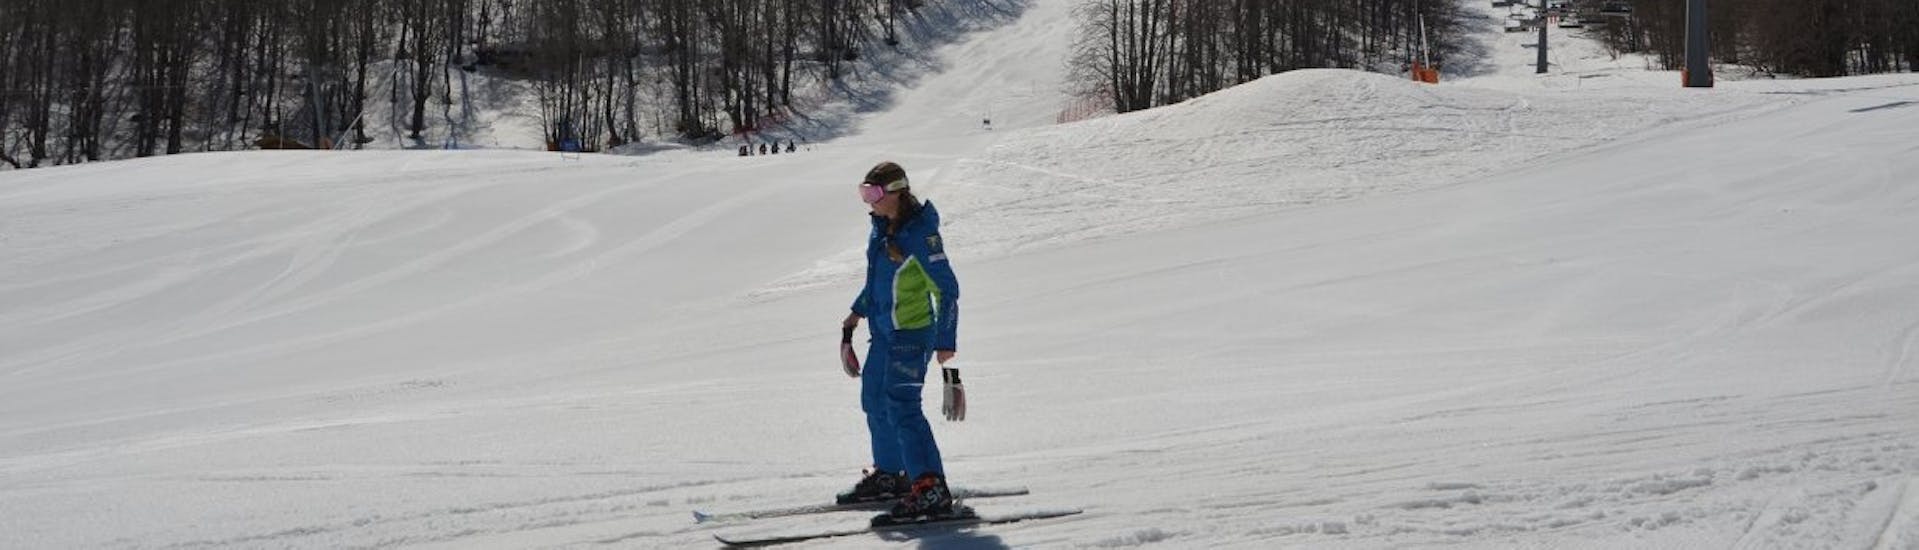 Privater Skikurs für Erwachsene ab 15 Jahren für alle Levels.